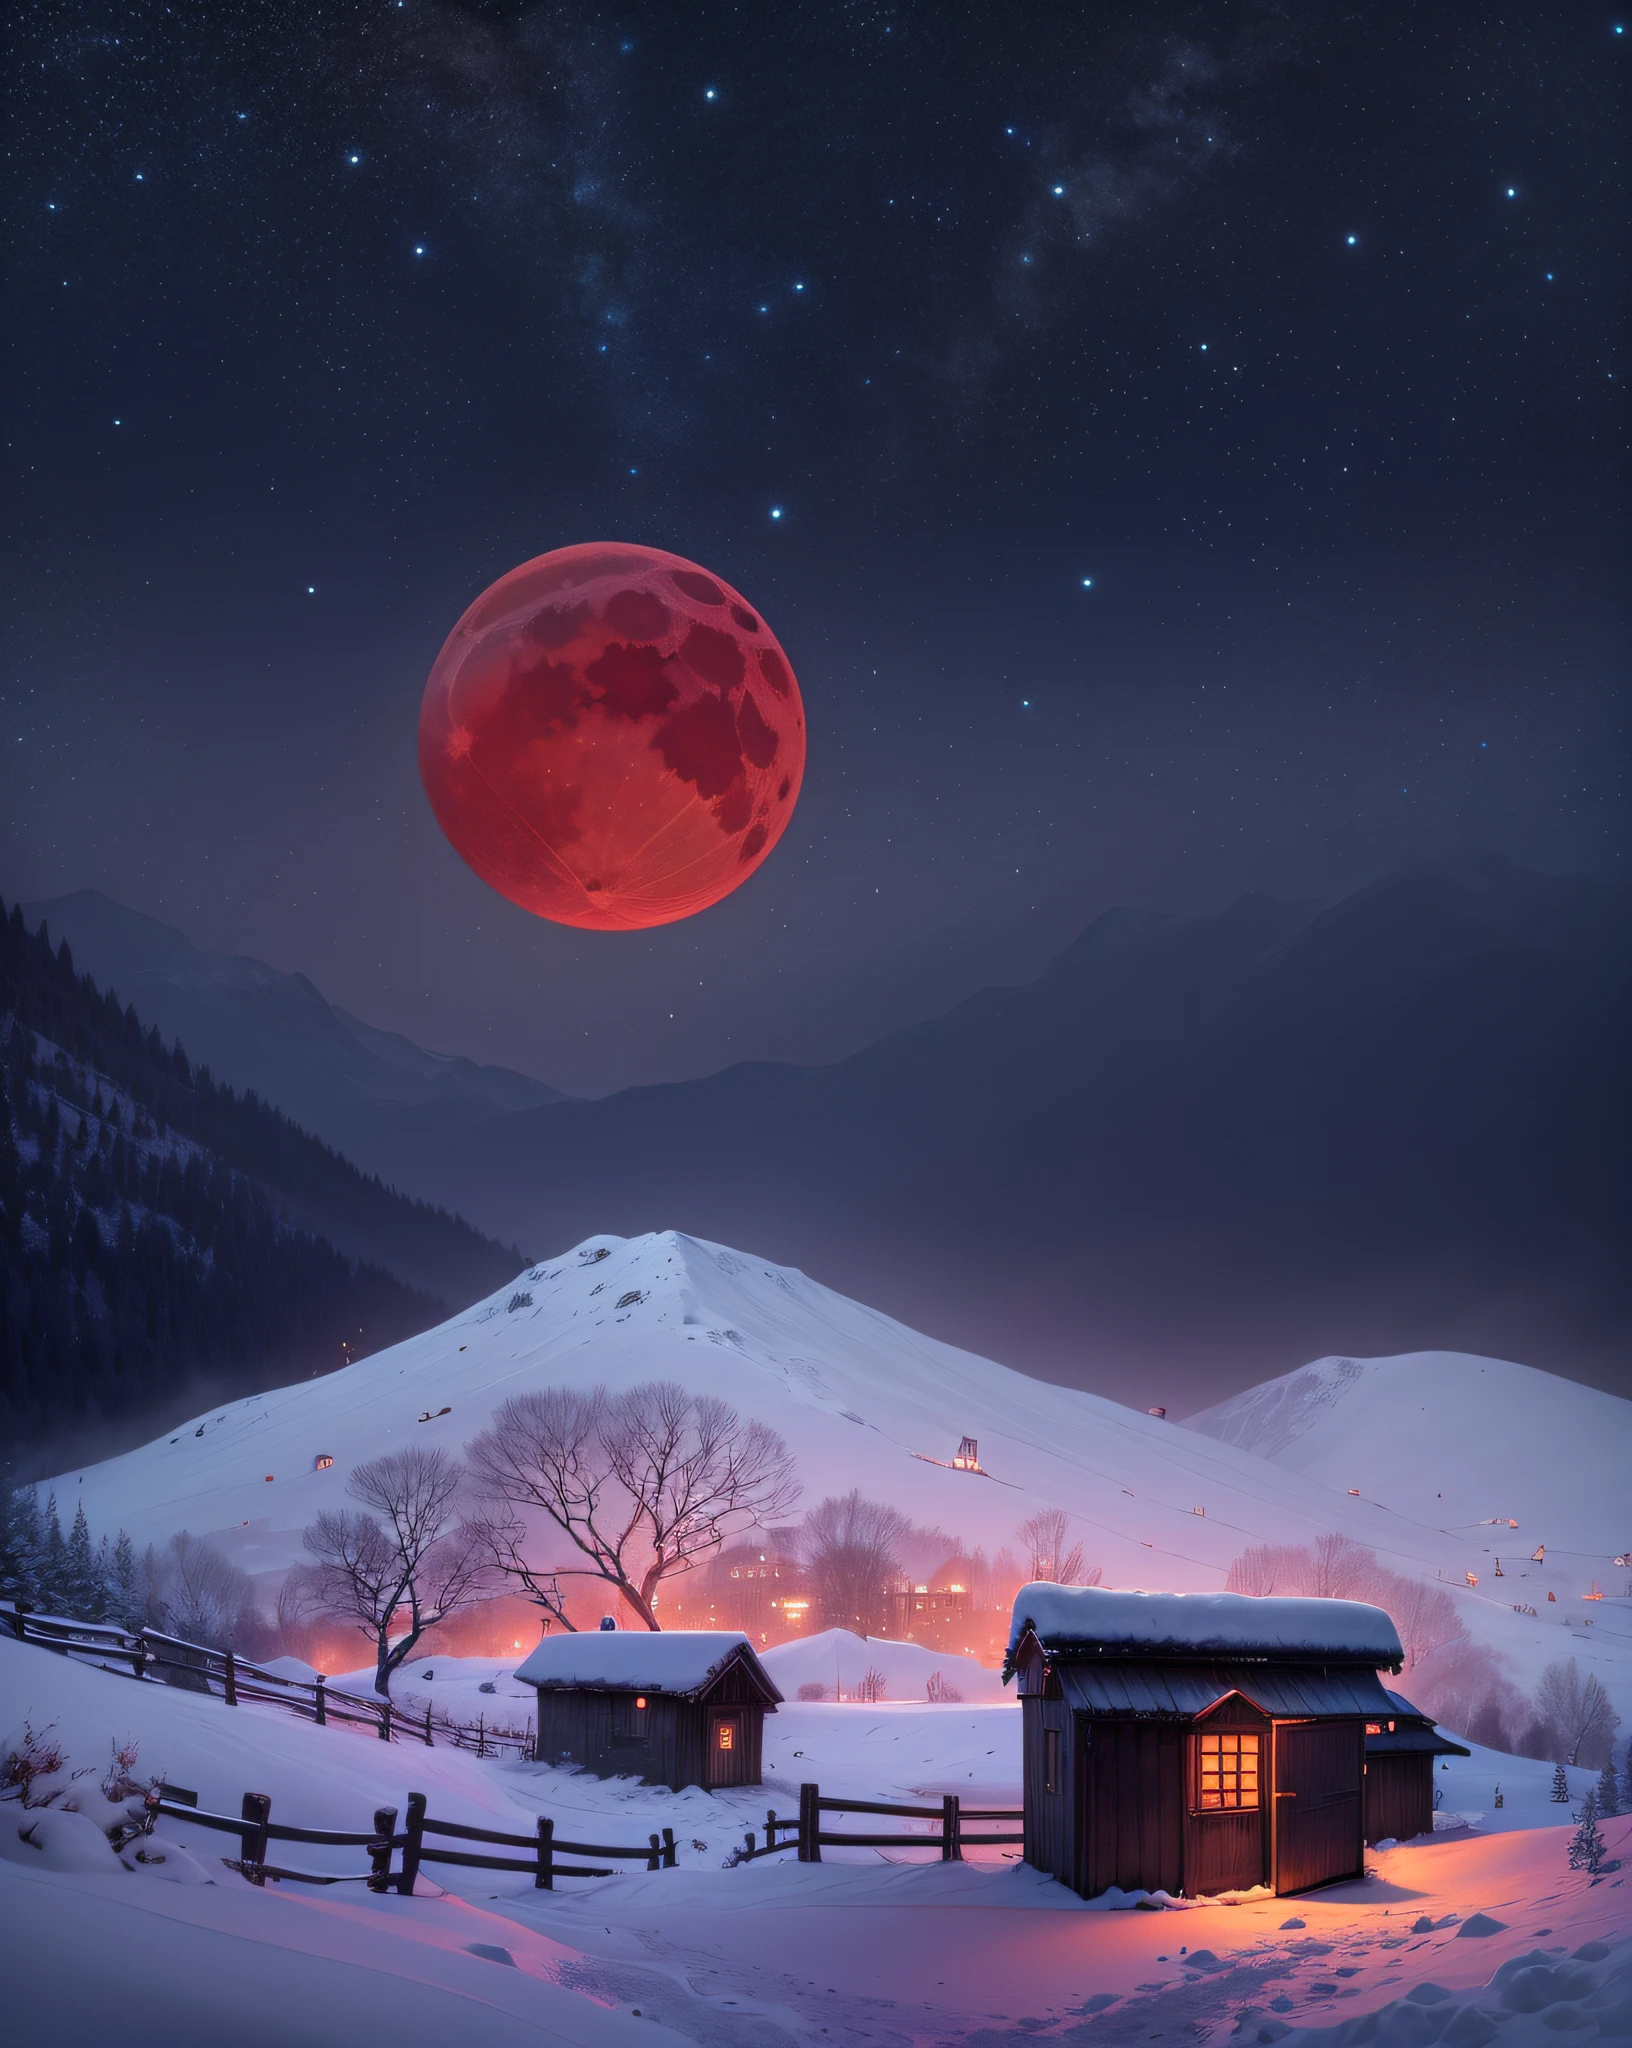 eine dunkle Nacht、roter Mond、Schneelandschaft、Schneeberge、Kleiner Schuppen、Licht dringt durch das Schuppenfenster